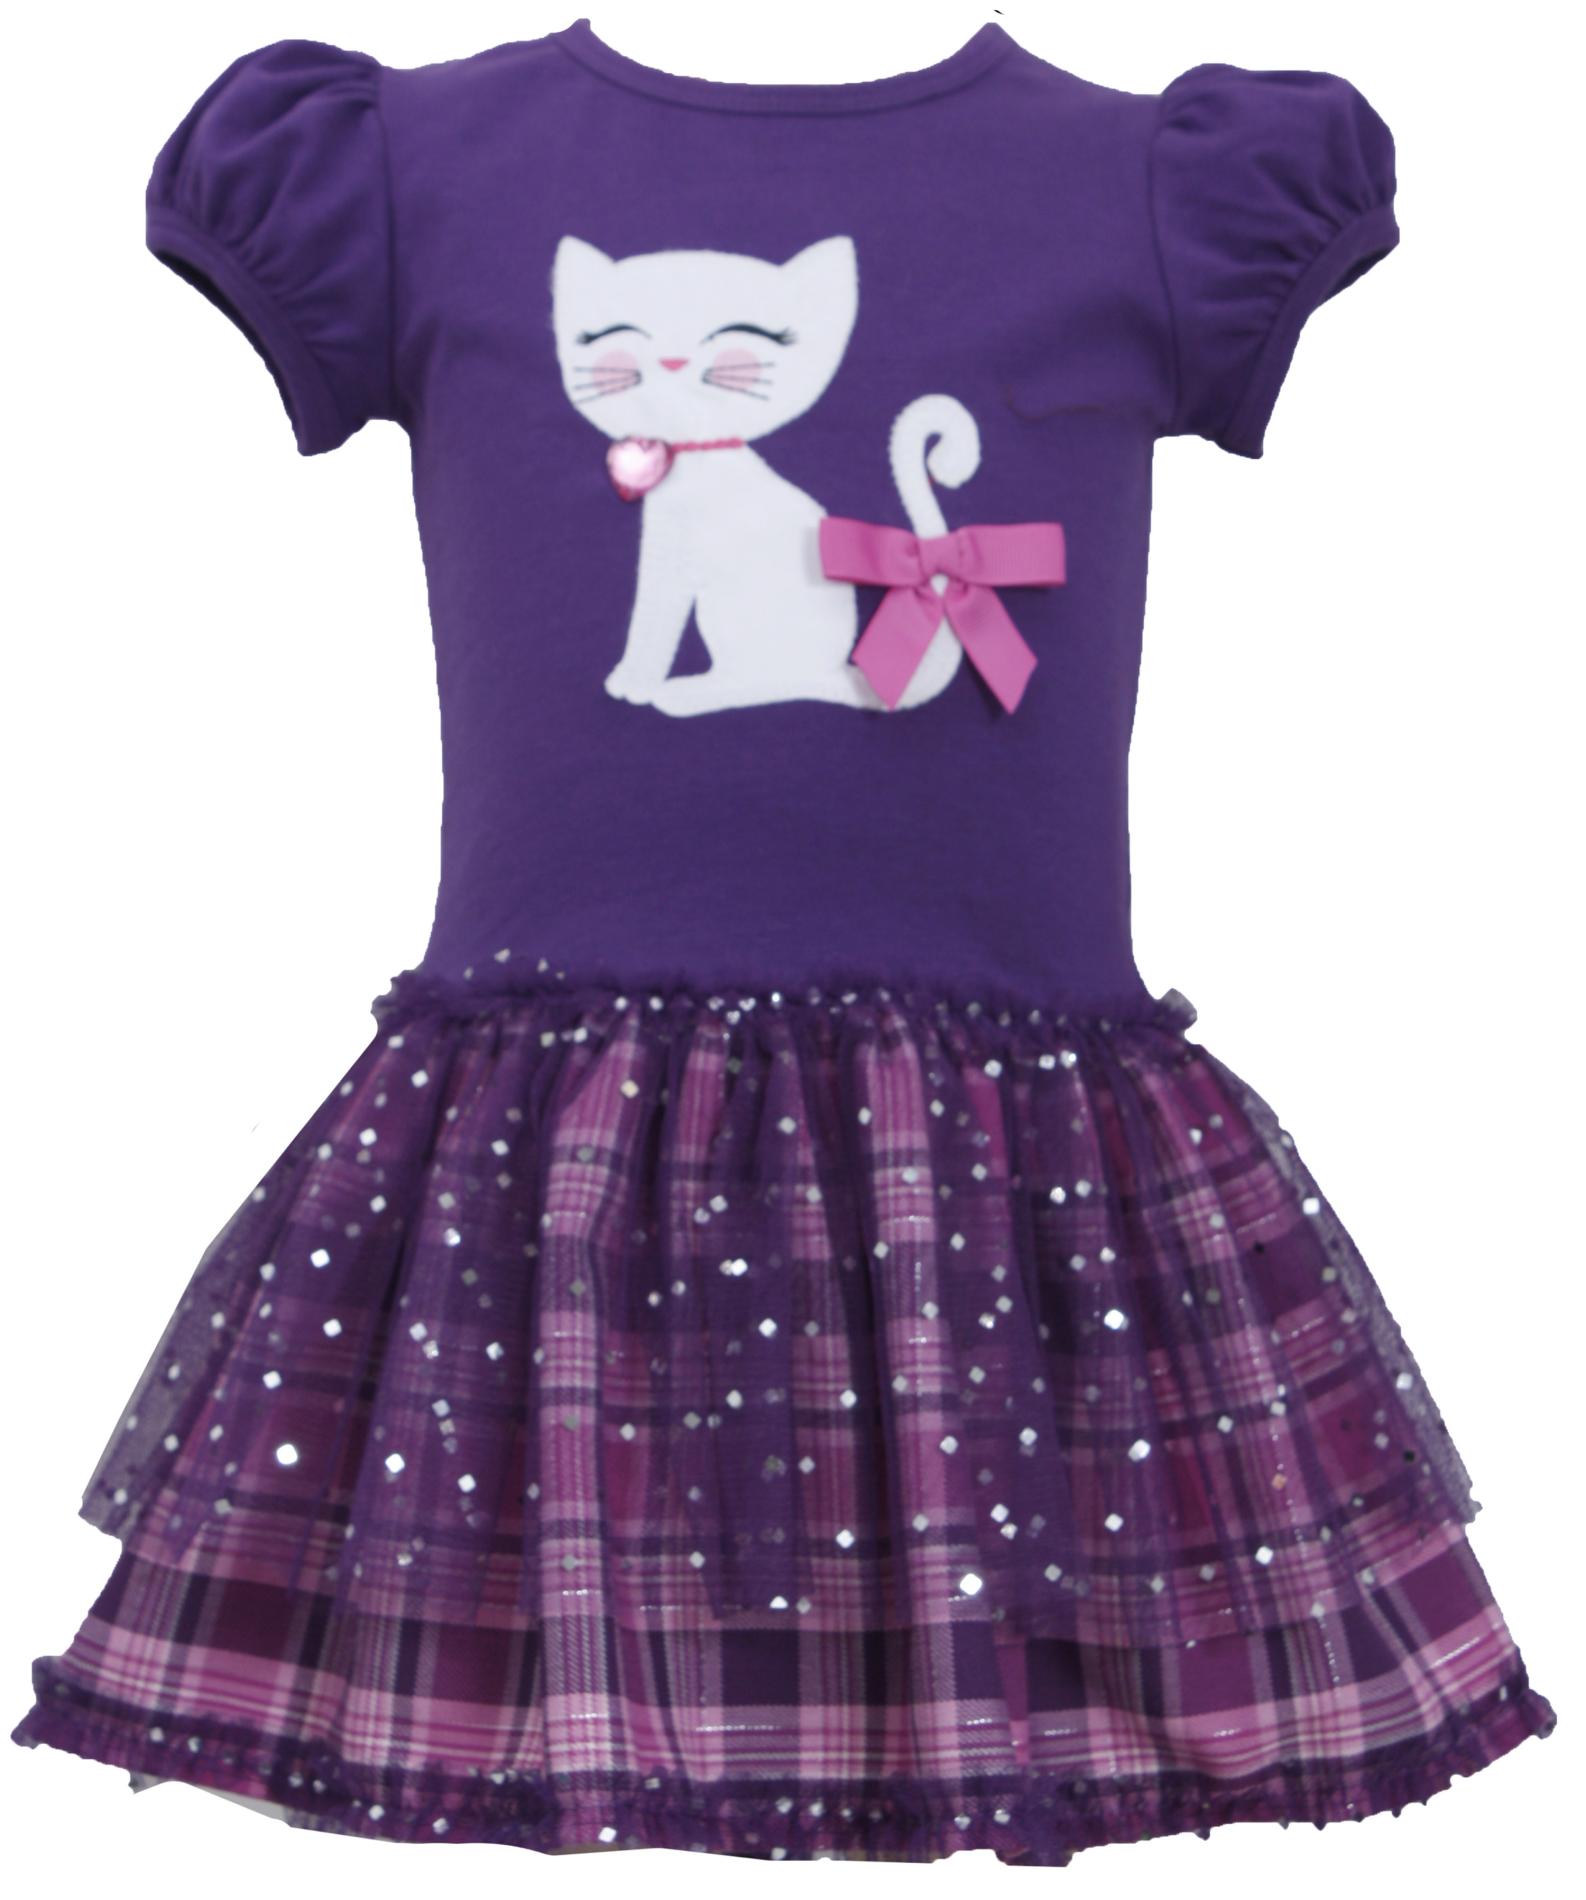 Ashley Ann Infant & Toddler Girl's Casual Dress - Kitty